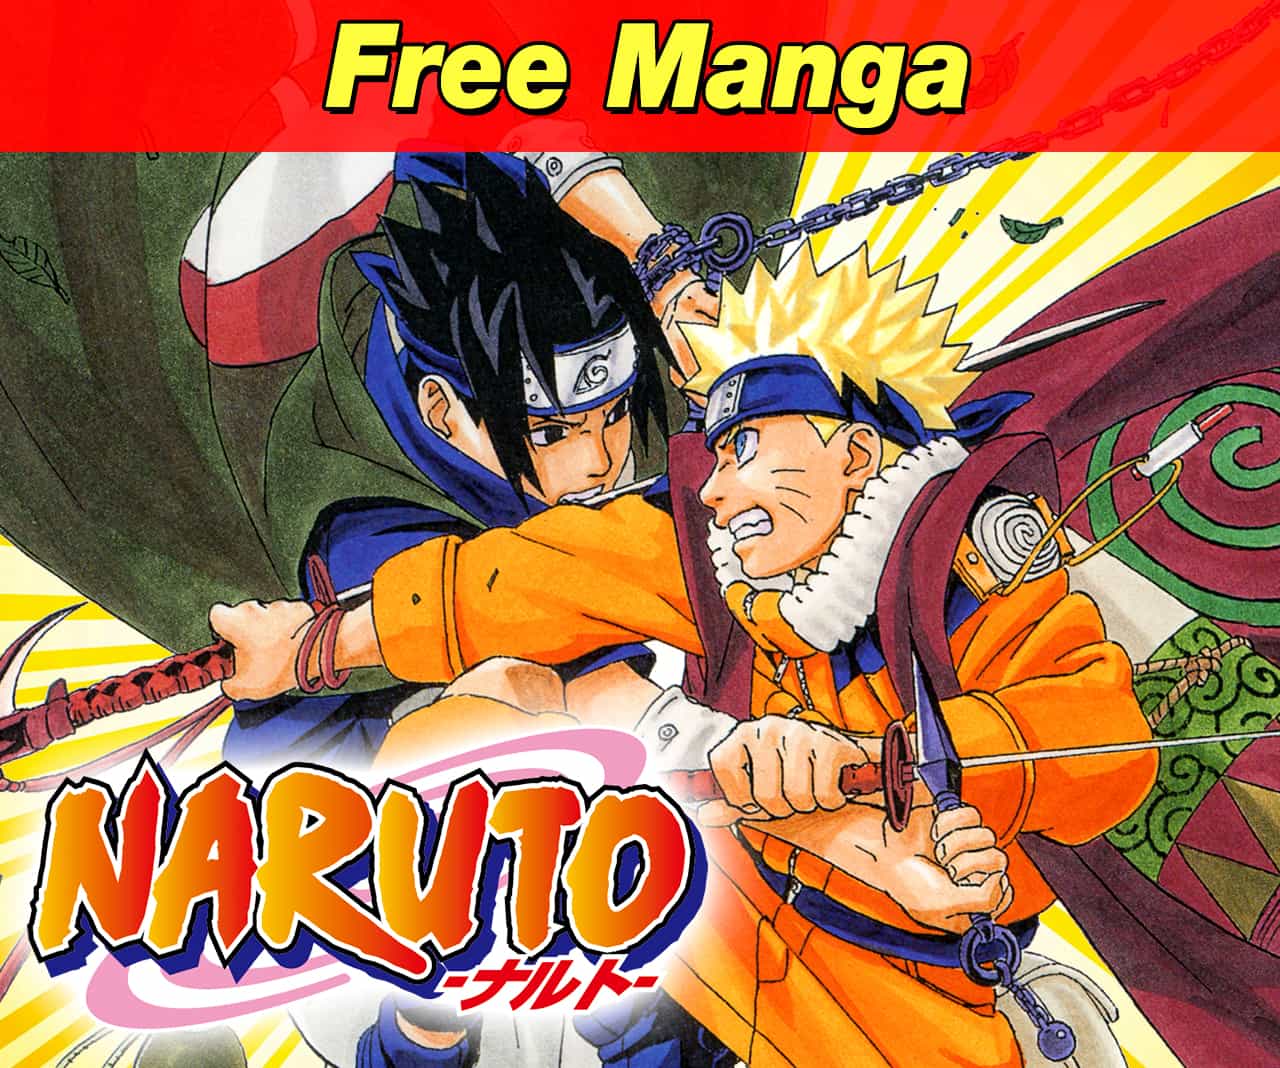 NARUTO [Naruto vs. Sasuke]